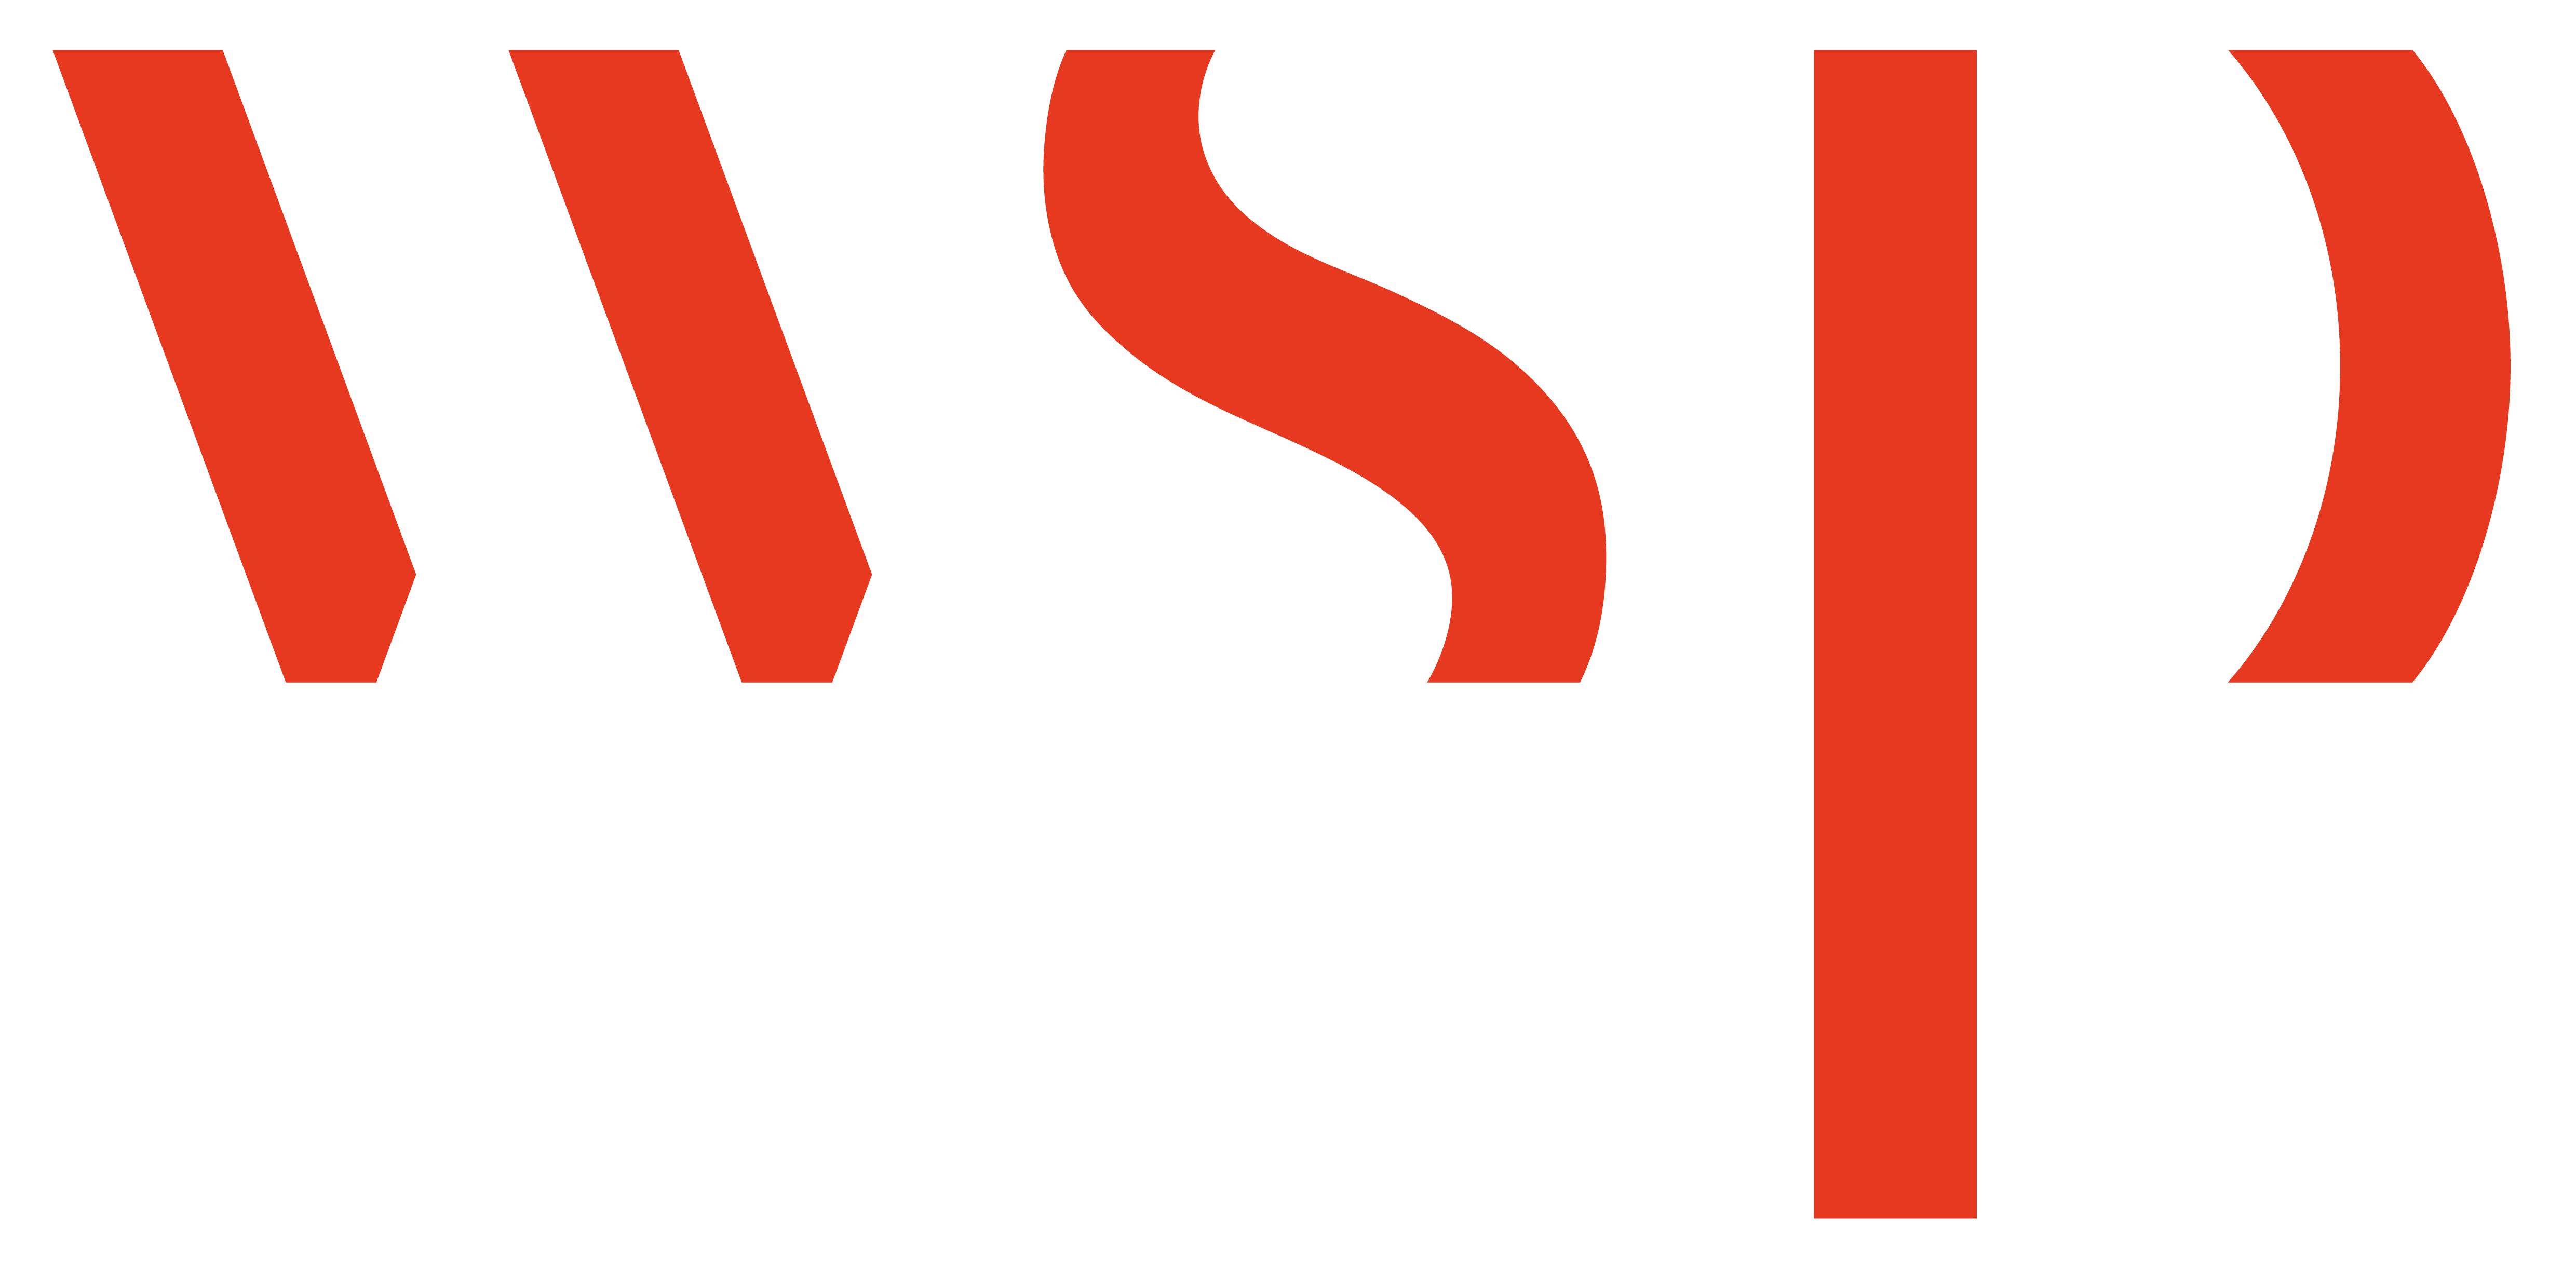 Organization logo of WSP Canada Inc